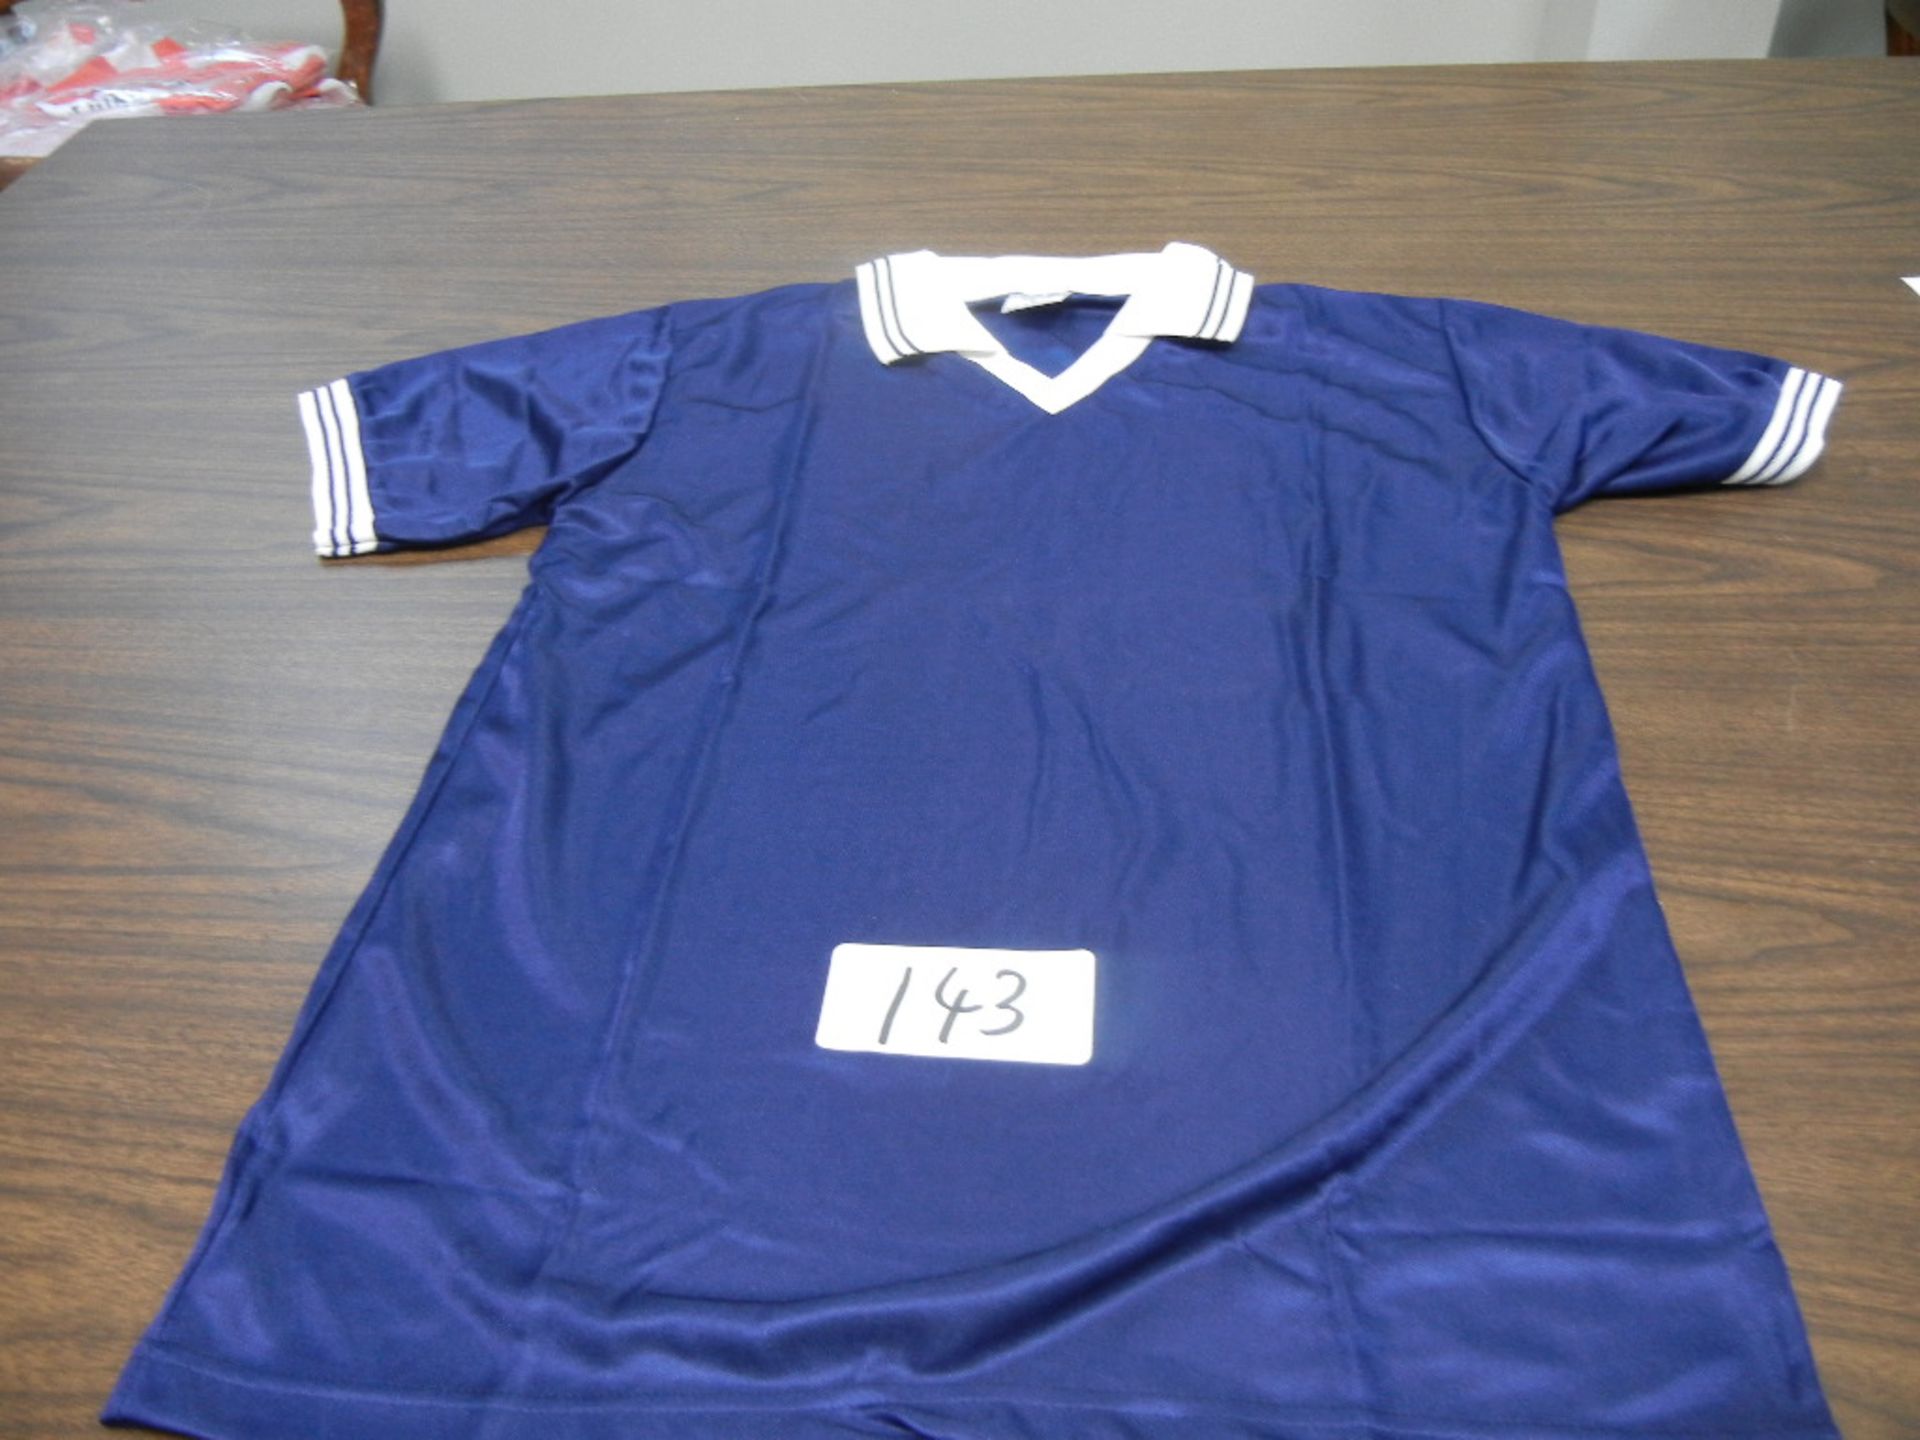 Case of Adult Soccer Jersey Hi-Sheen V-Neck, 1/4 Sleeves, Knit Collar VKM# A696l,